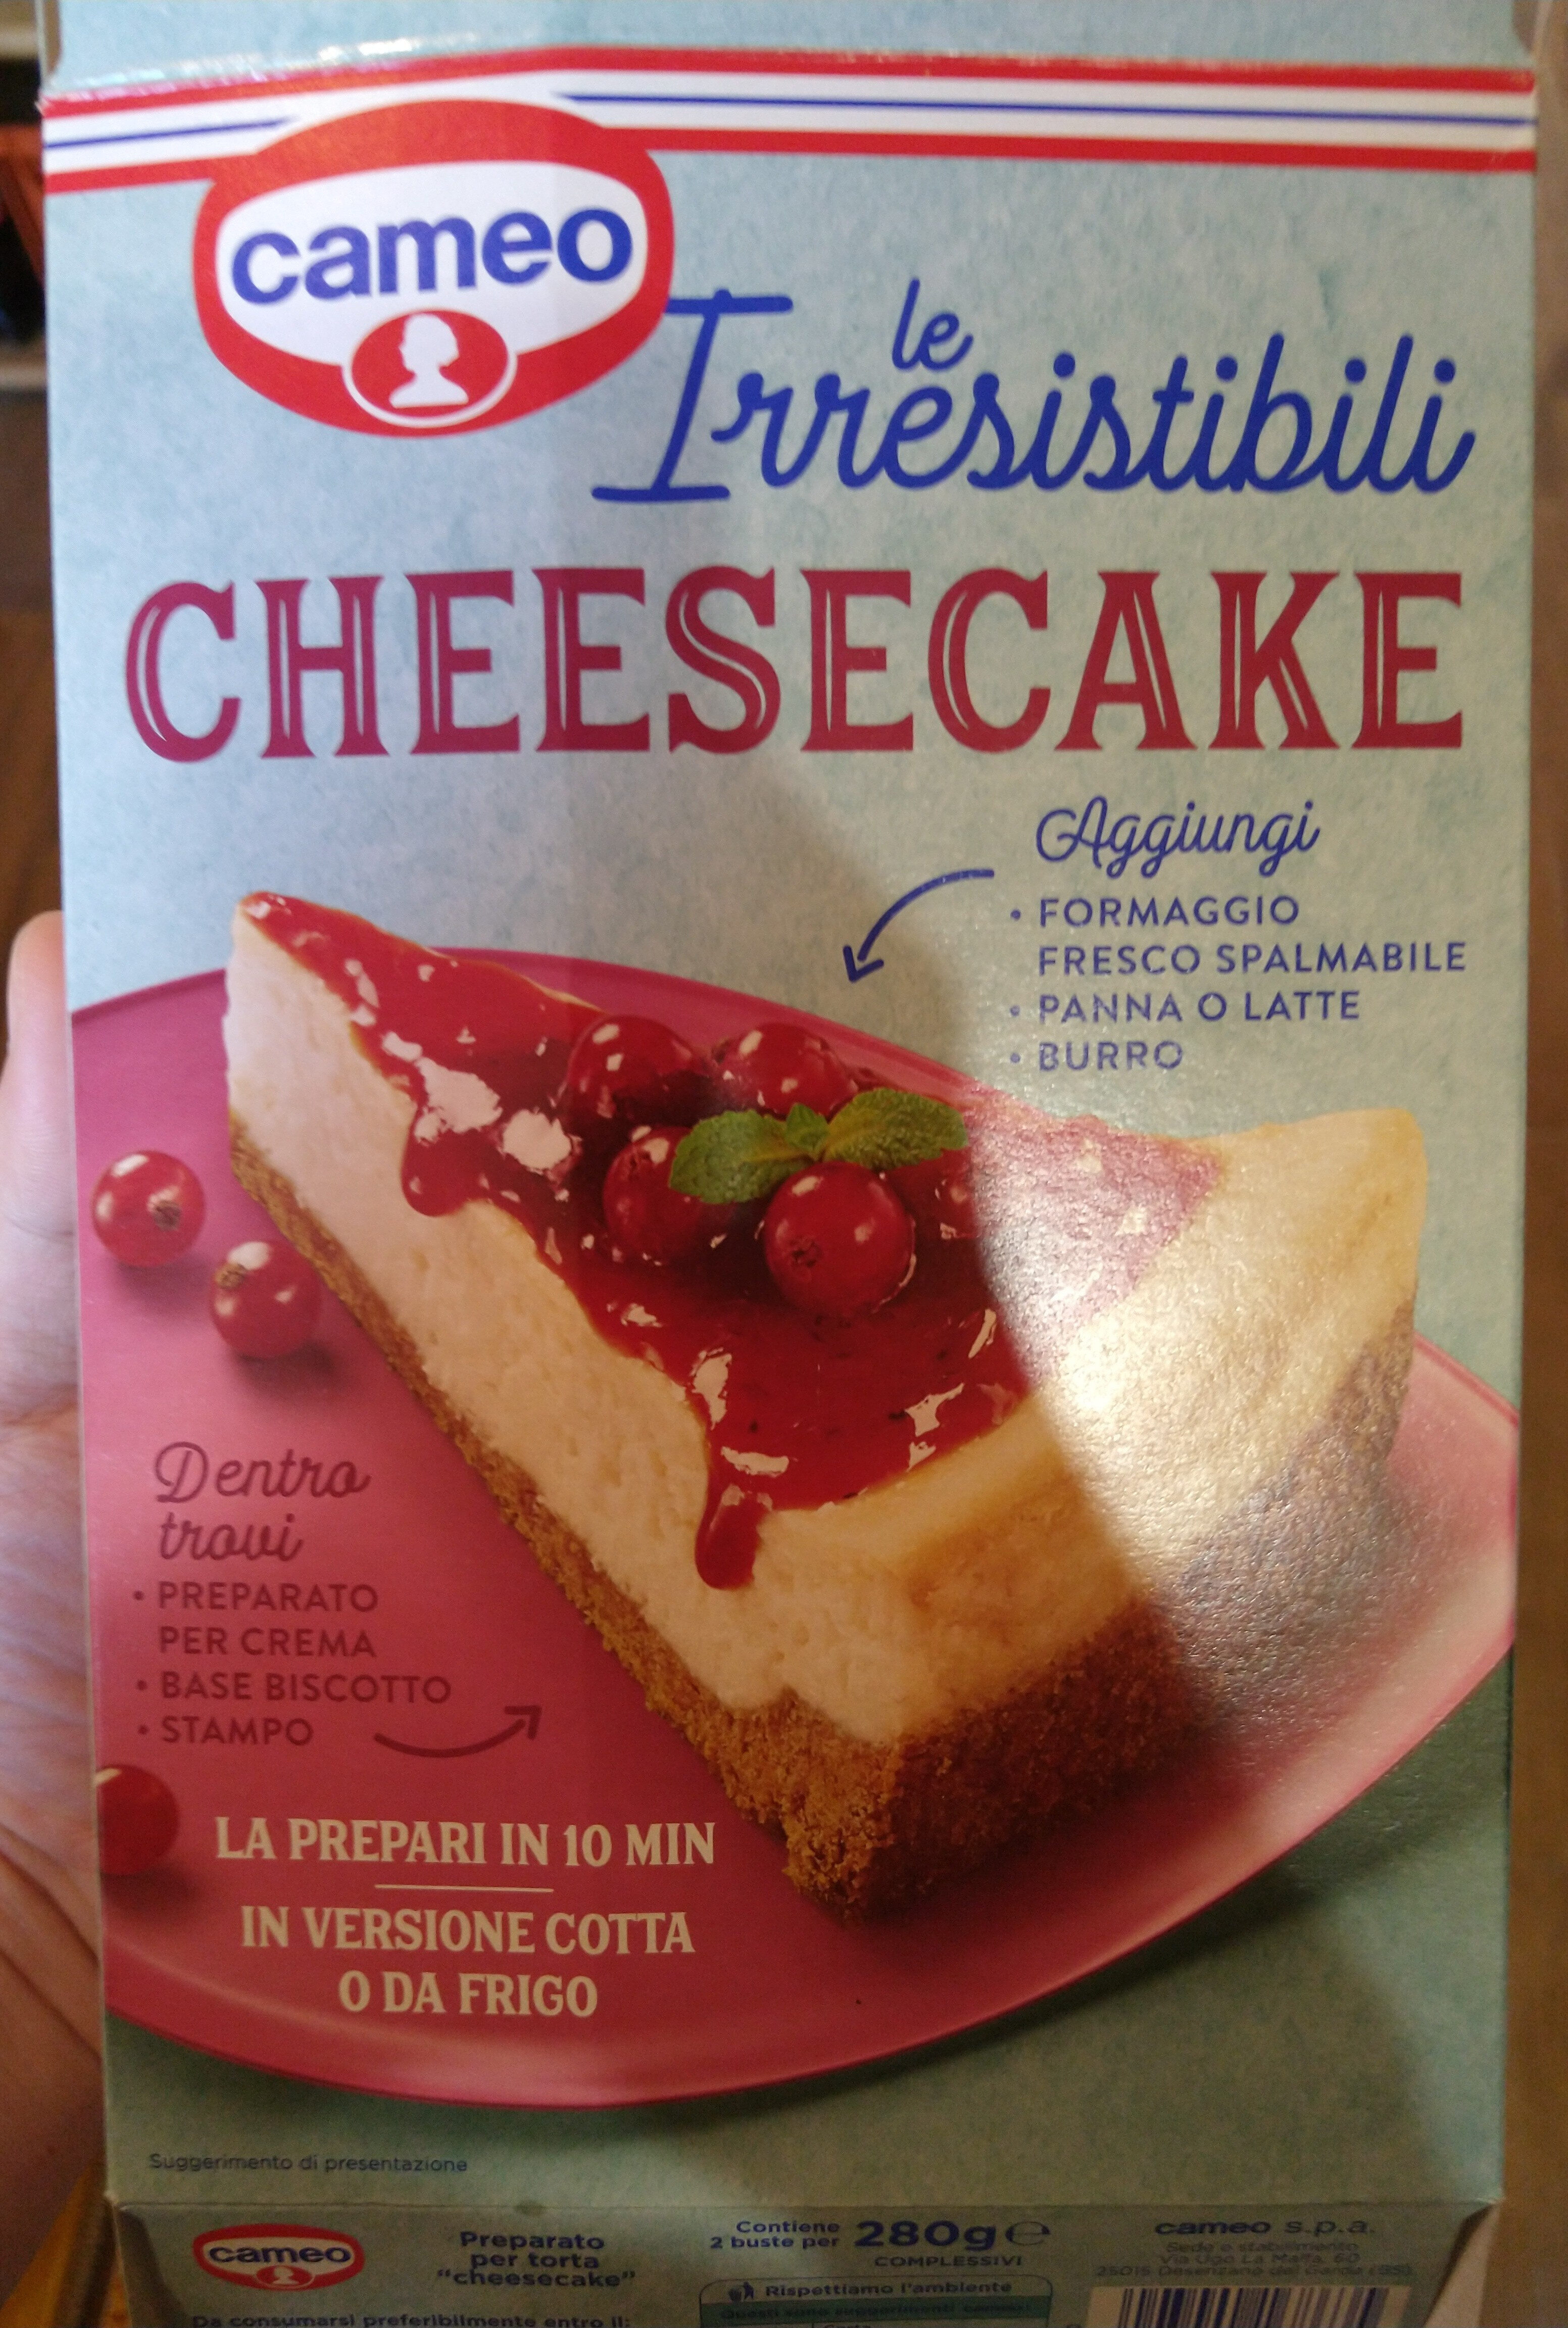 le irresistibili - cheesecake - Prodotto